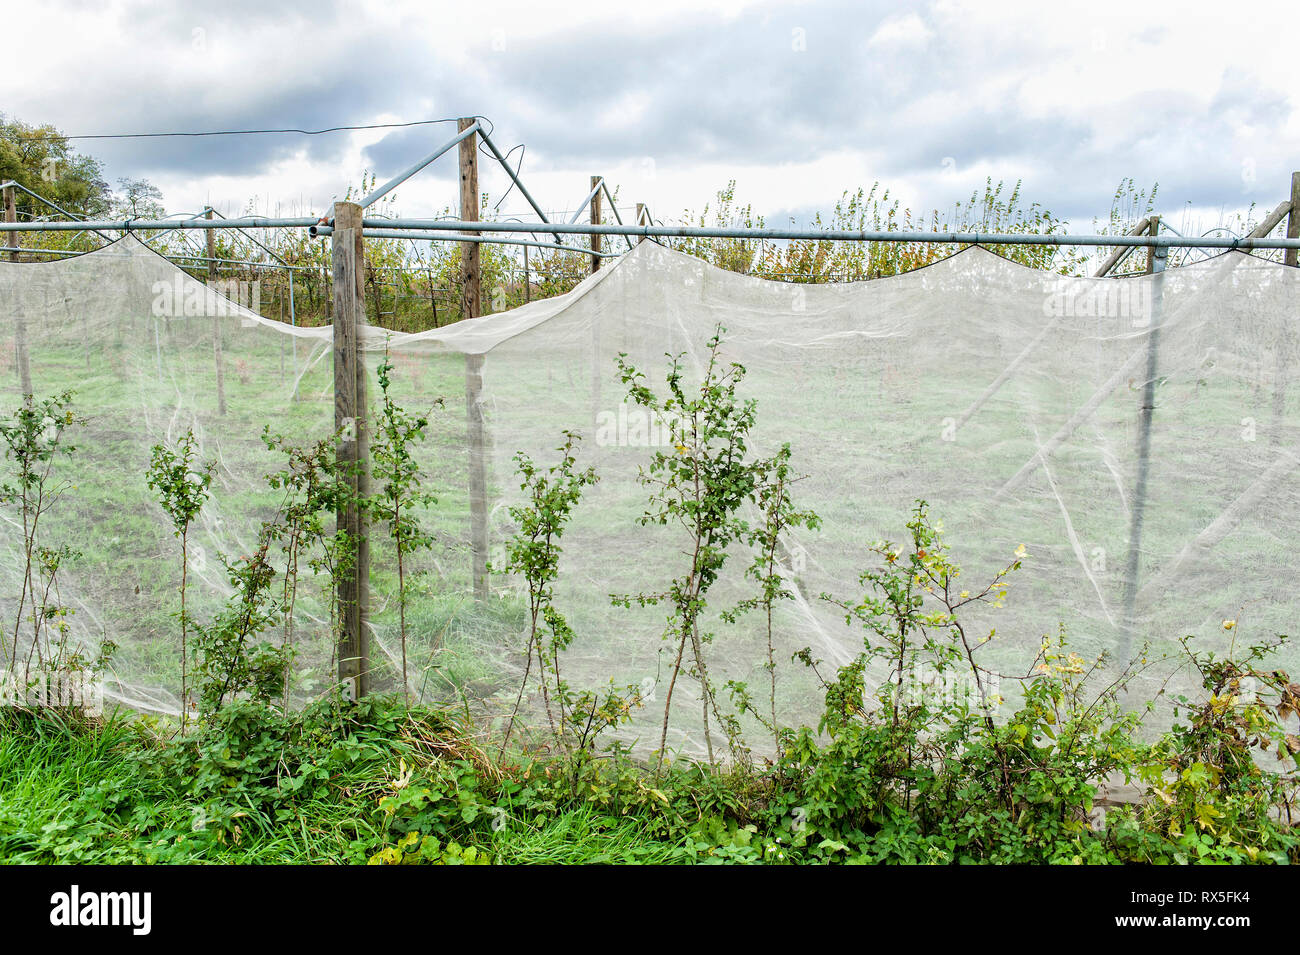 Un Betallgestellen haengen alte Netze umrankt von Gruenpflanzen Foto Stock